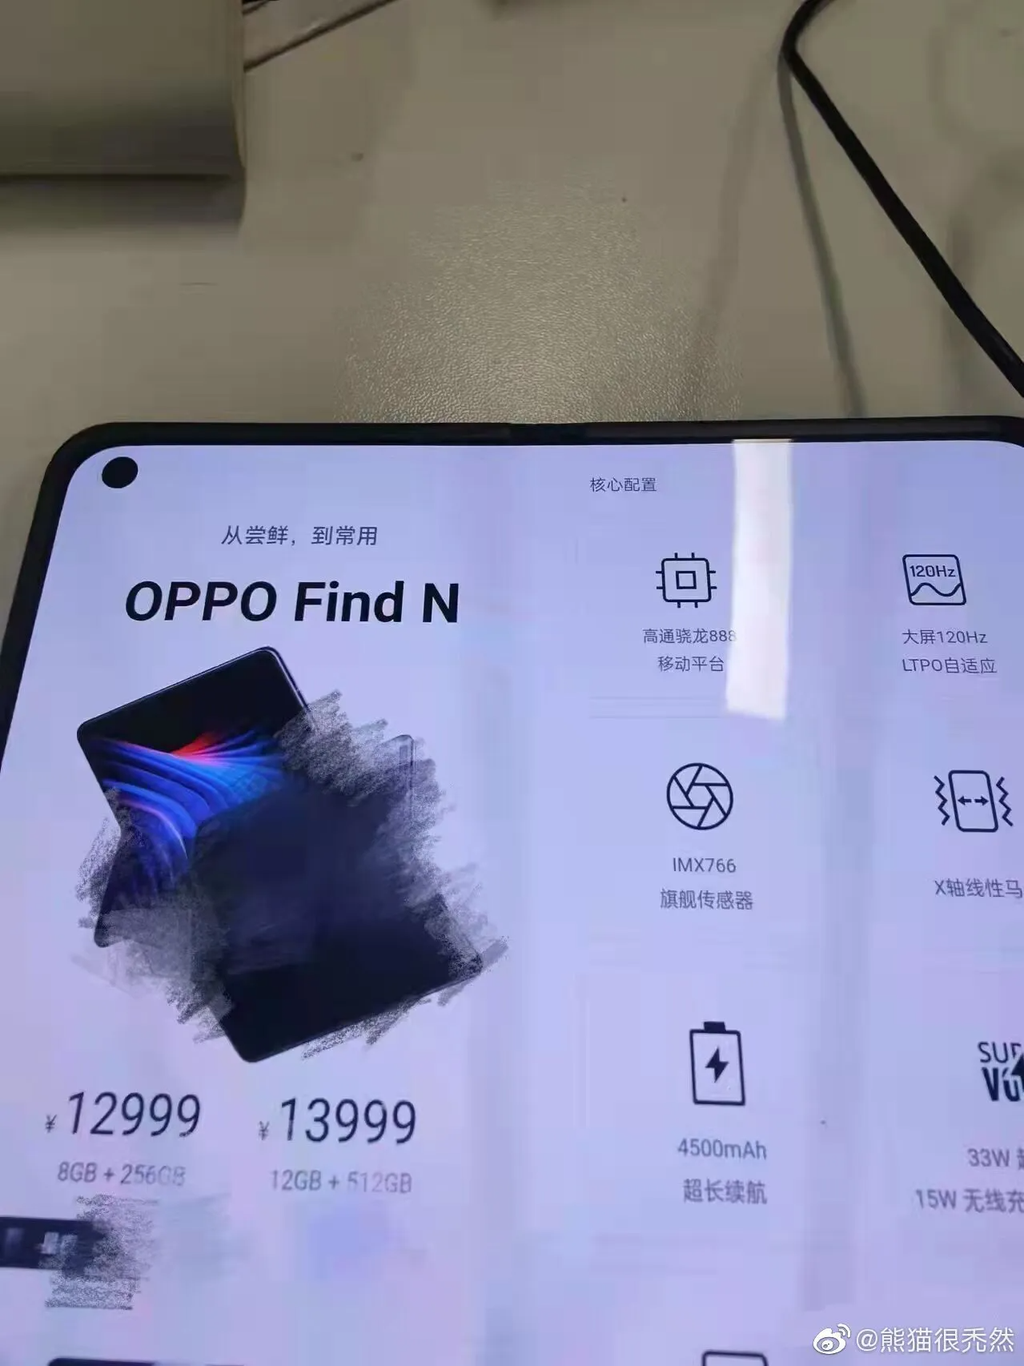 Revelados detalhes do Find N, primeiro celular dobrável da Oppo (Imagem: Reprodução/Bald Panda)